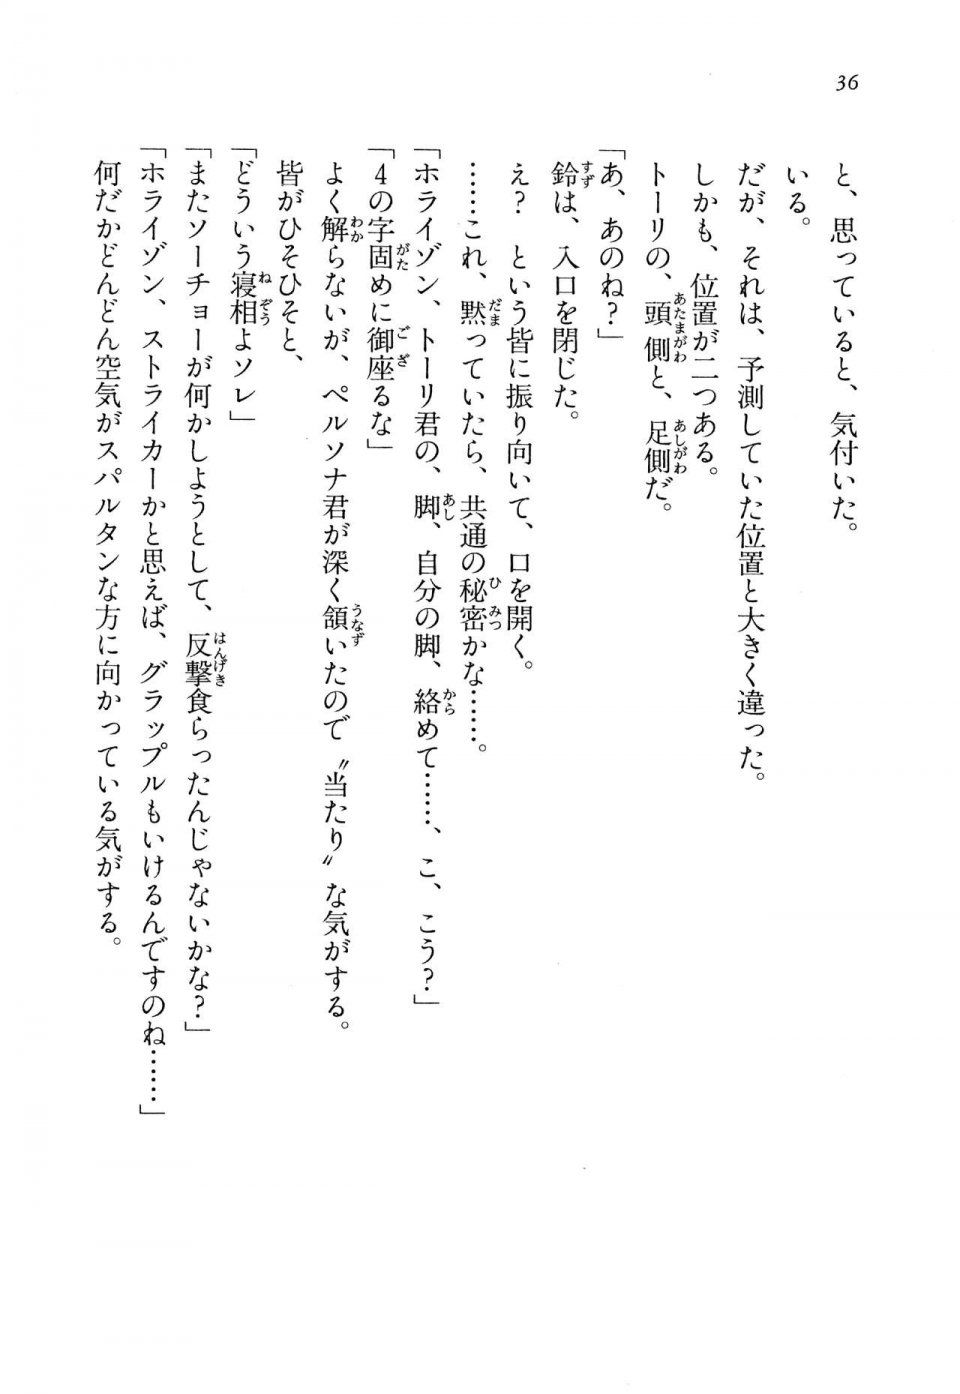 Kyoukai Senjou no Horizon LN Vol 13(6A) - Photo #36